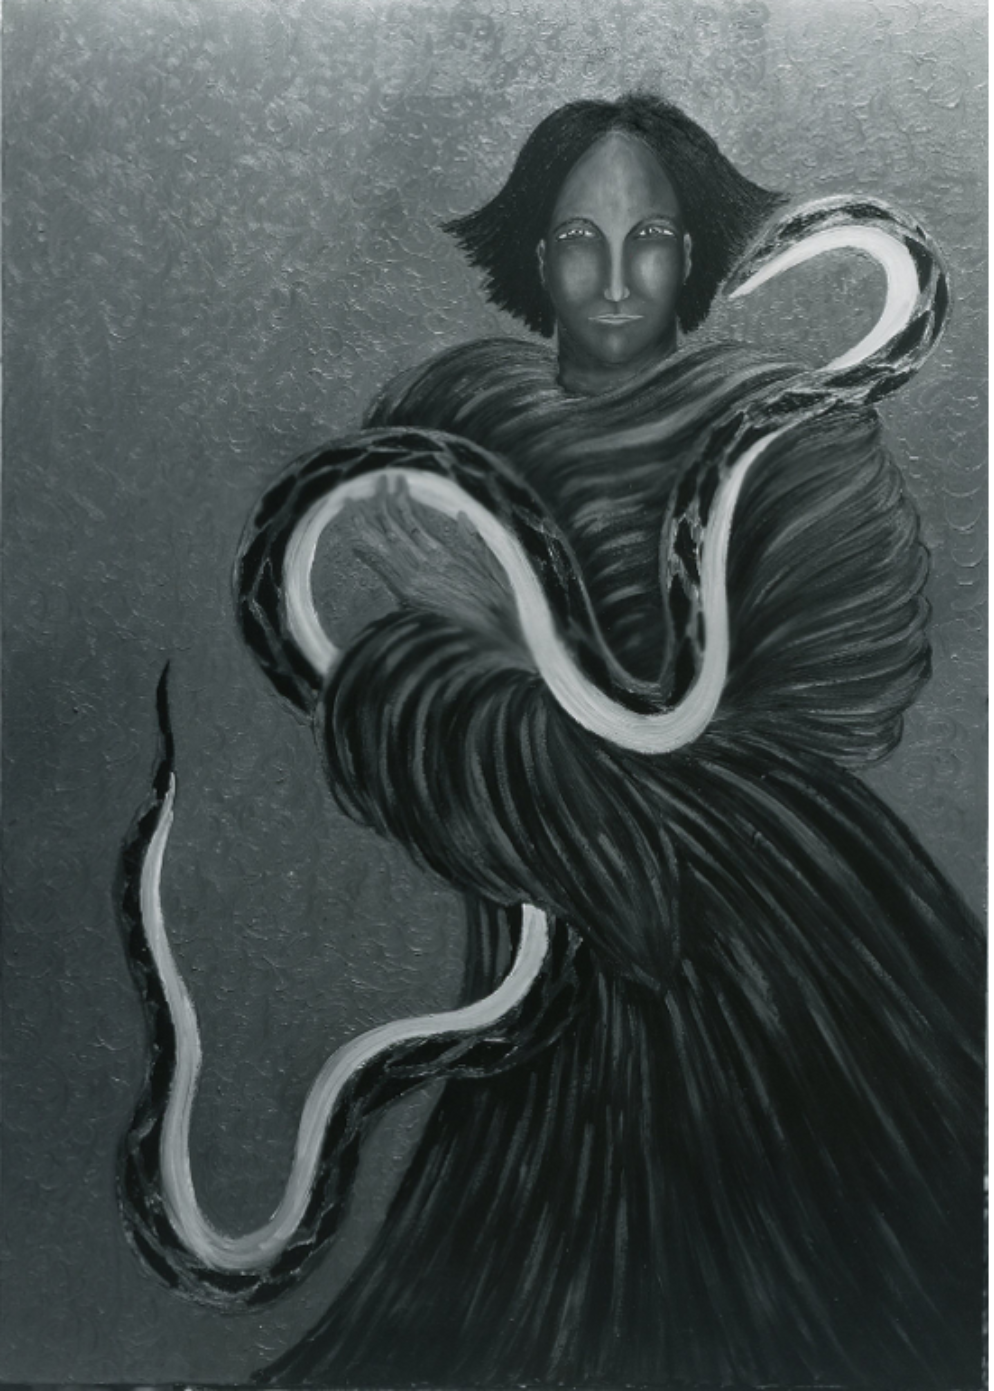 Snake Woman 2 by Marian Spore Bush